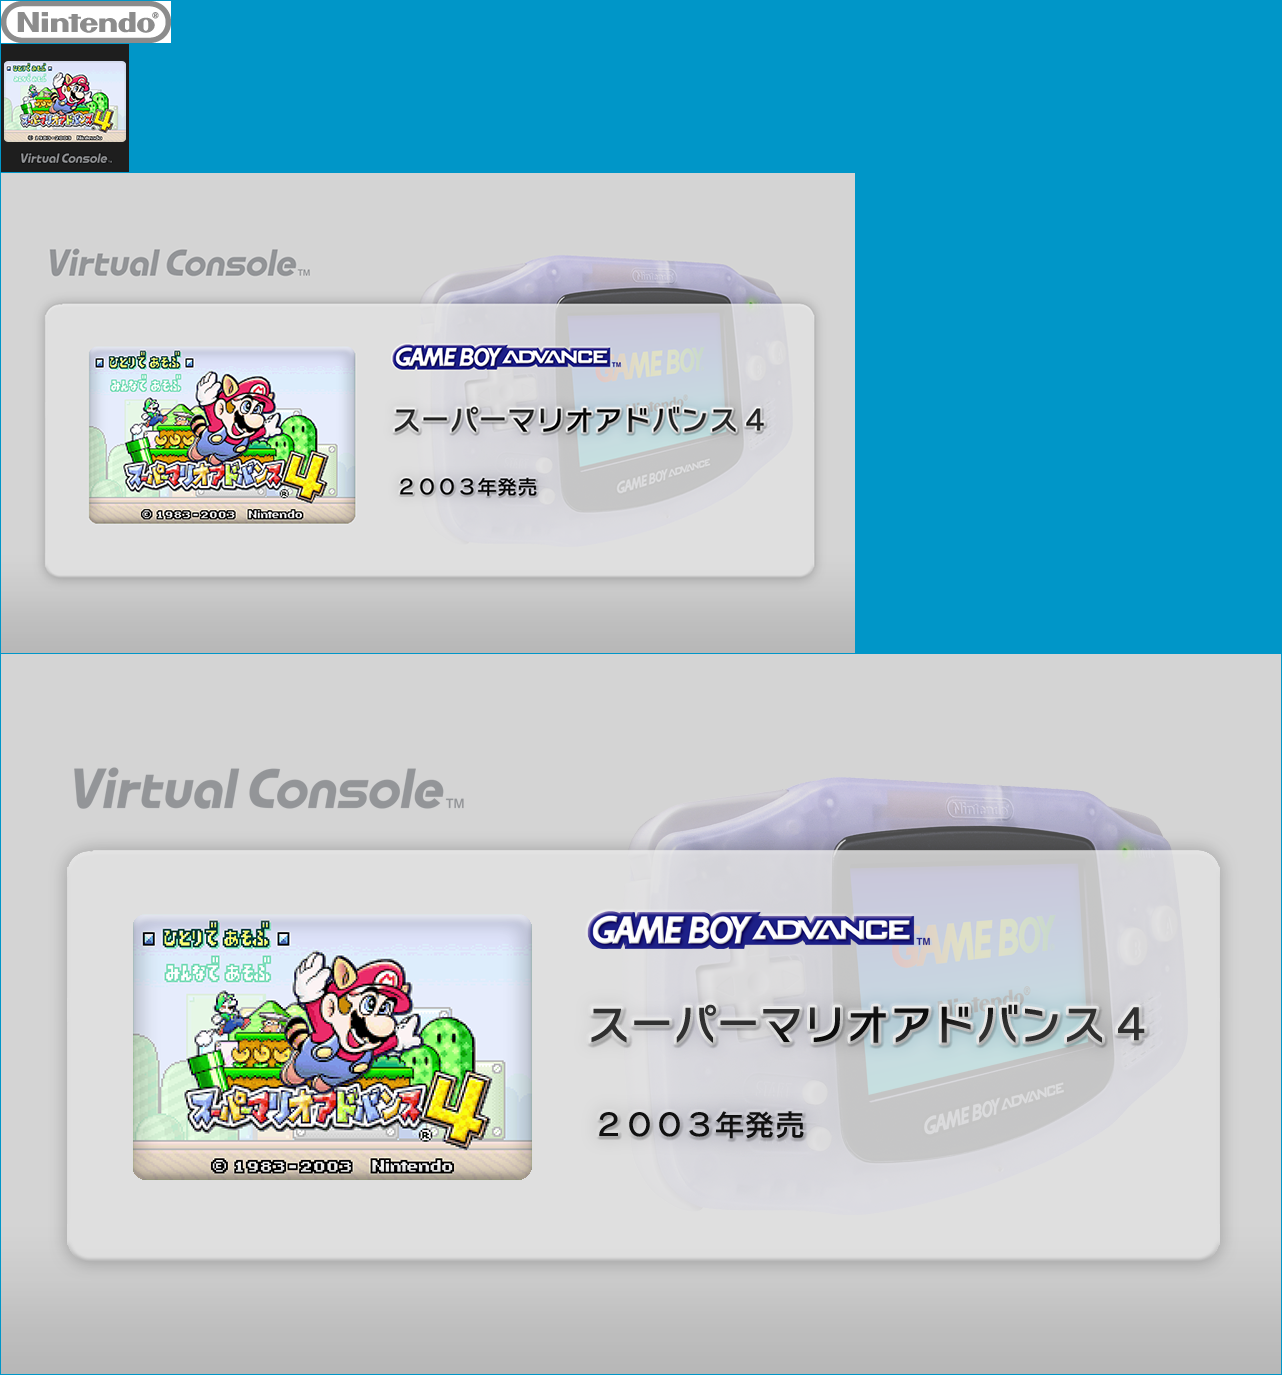 Virtual Console - Super Mario Advance 4